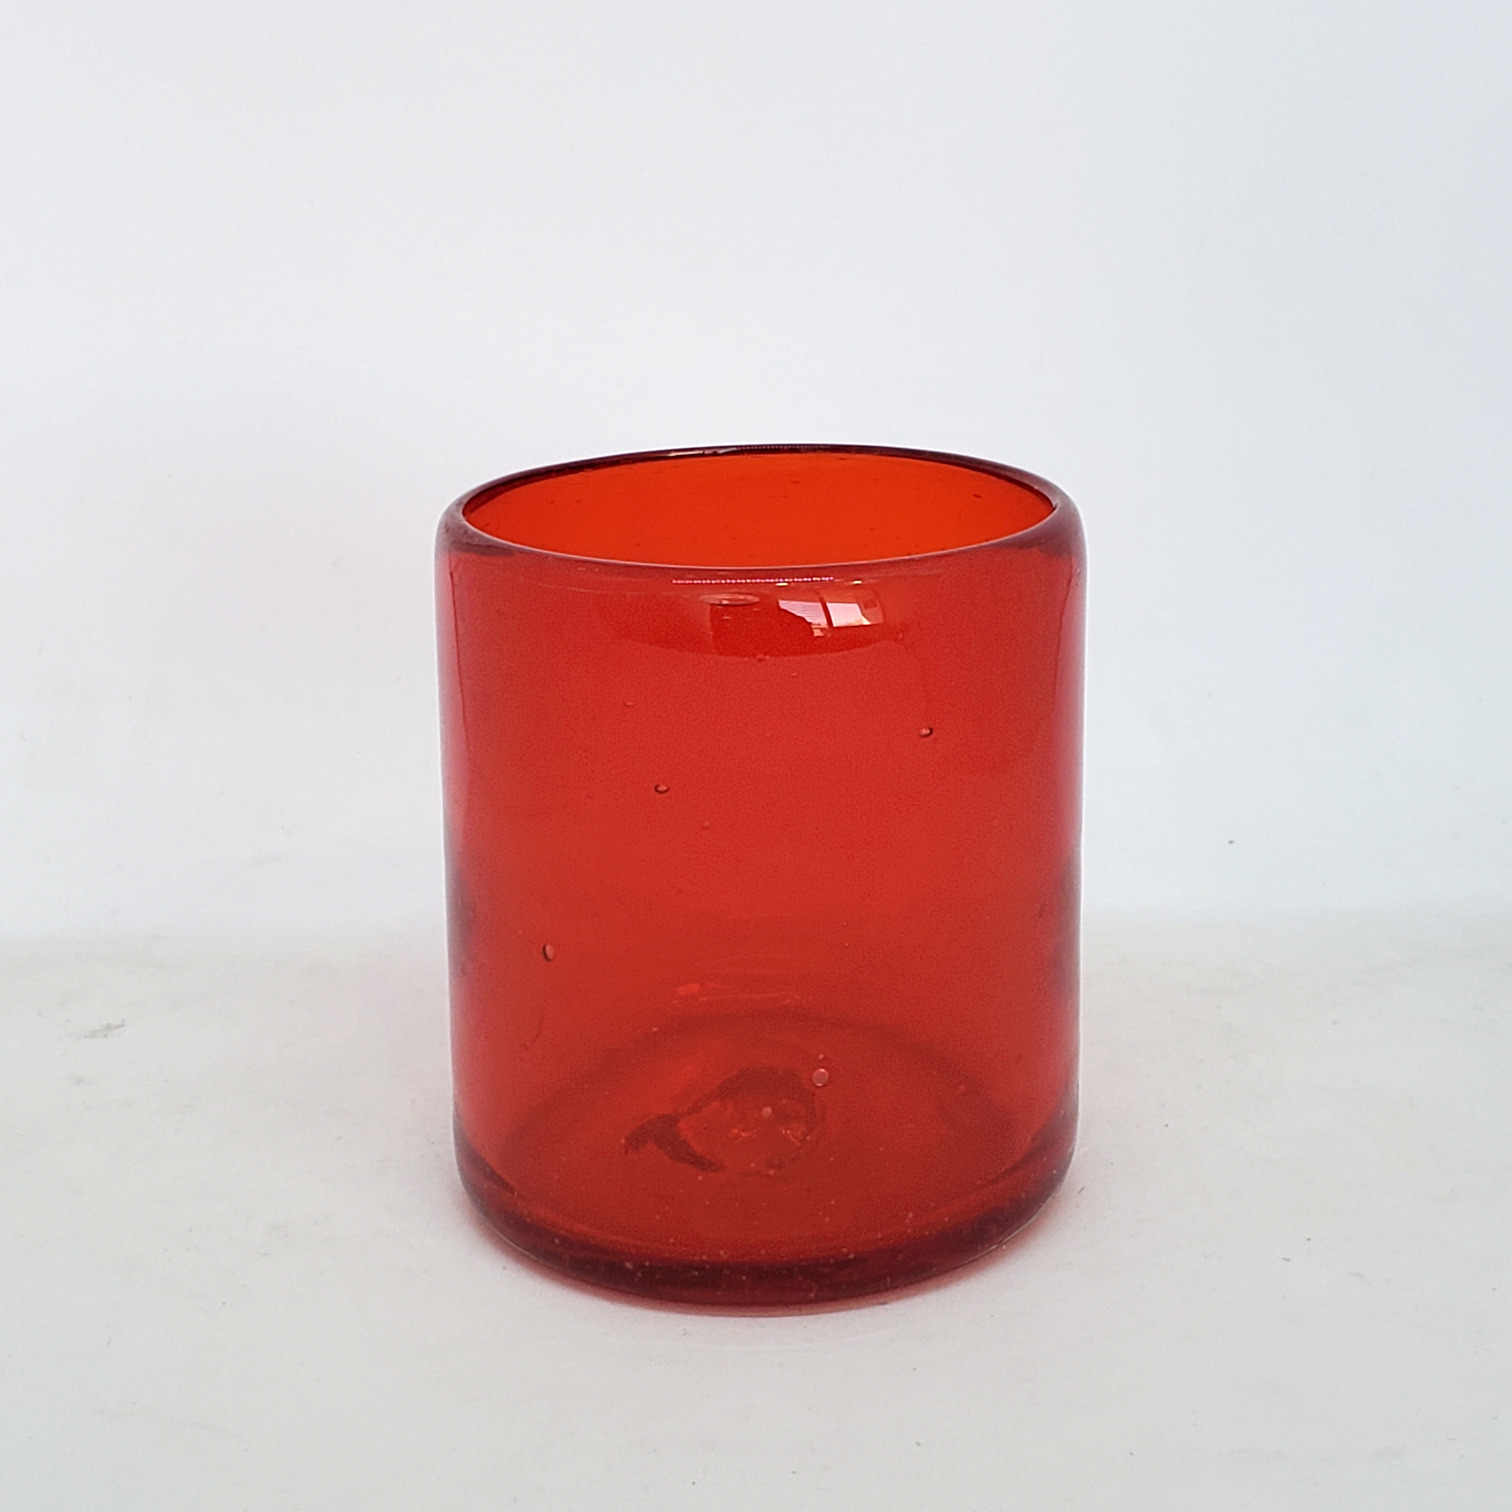 Colores Solidos al Mayoreo / s 9 oz color Rojo Sólido (set de 6) / Éstos artesanales vasos le darán un toque colorido a su bebida favorita.